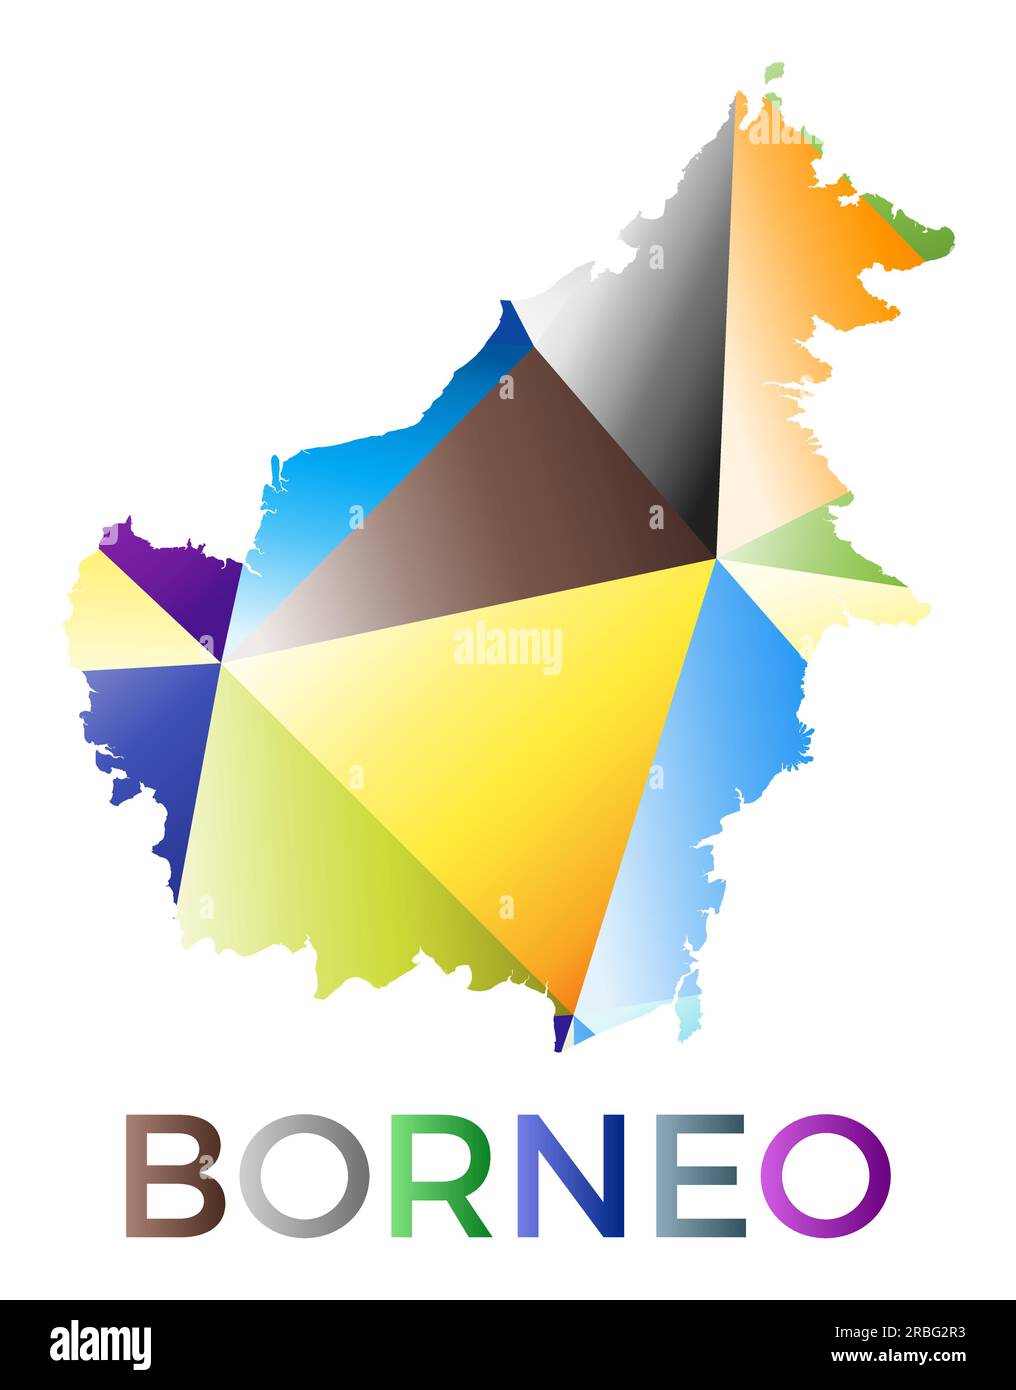 Forma Borneo dai colori vivaci. Logo dell'isola in stile geometrico multicolore. Design moderno e alla moda. Illustrazione vettoriale VIBRANT. Illustrazione Vettoriale